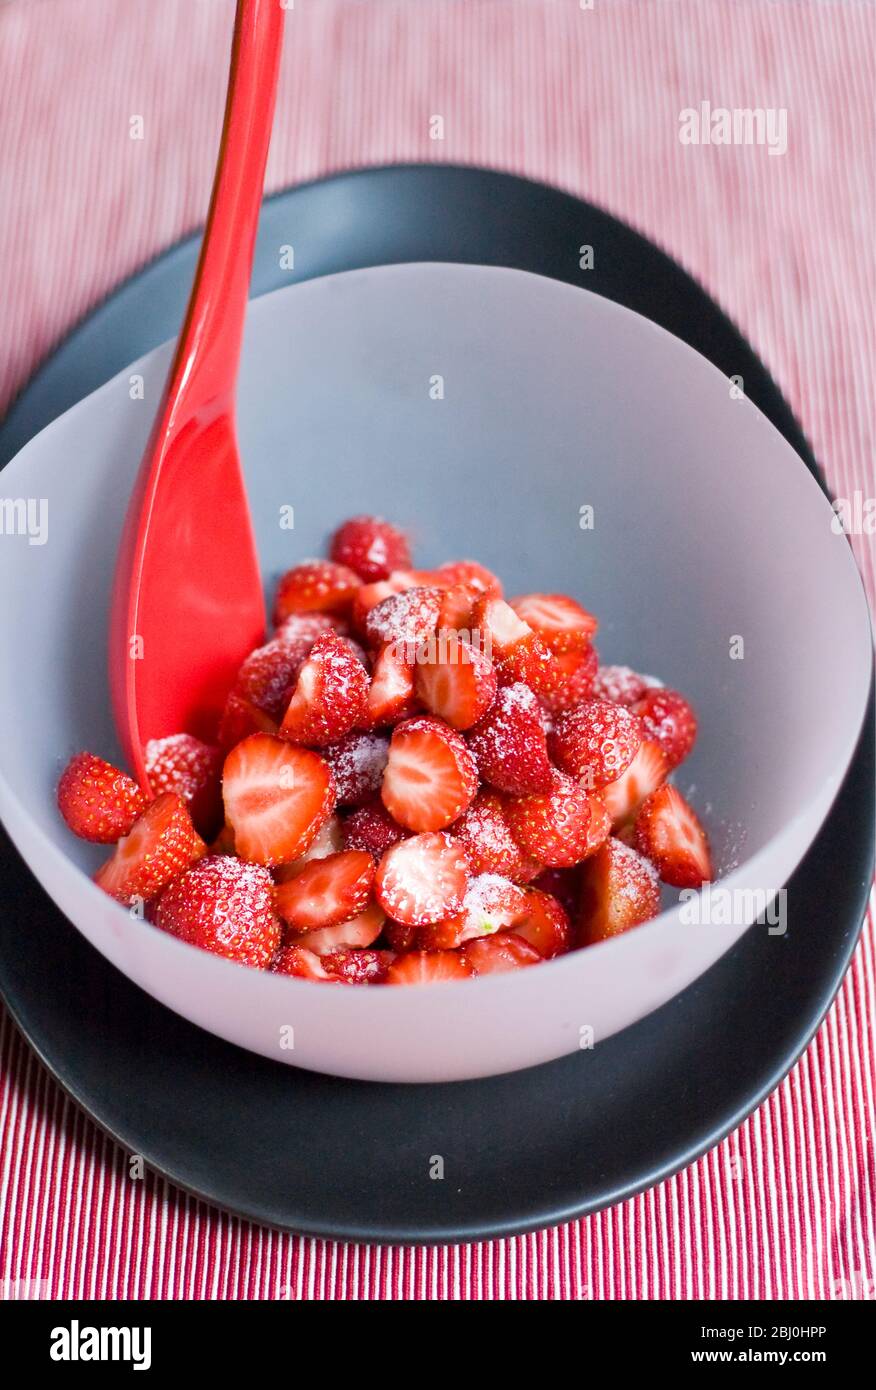 Erdbeeren, geschält und halbiert, mit Gießzucker bestäubt, in einer Schüssel aus mattem Glas auf schwarzem Teller mit hellrotem Melaminlöffel serviert. - Stockfoto